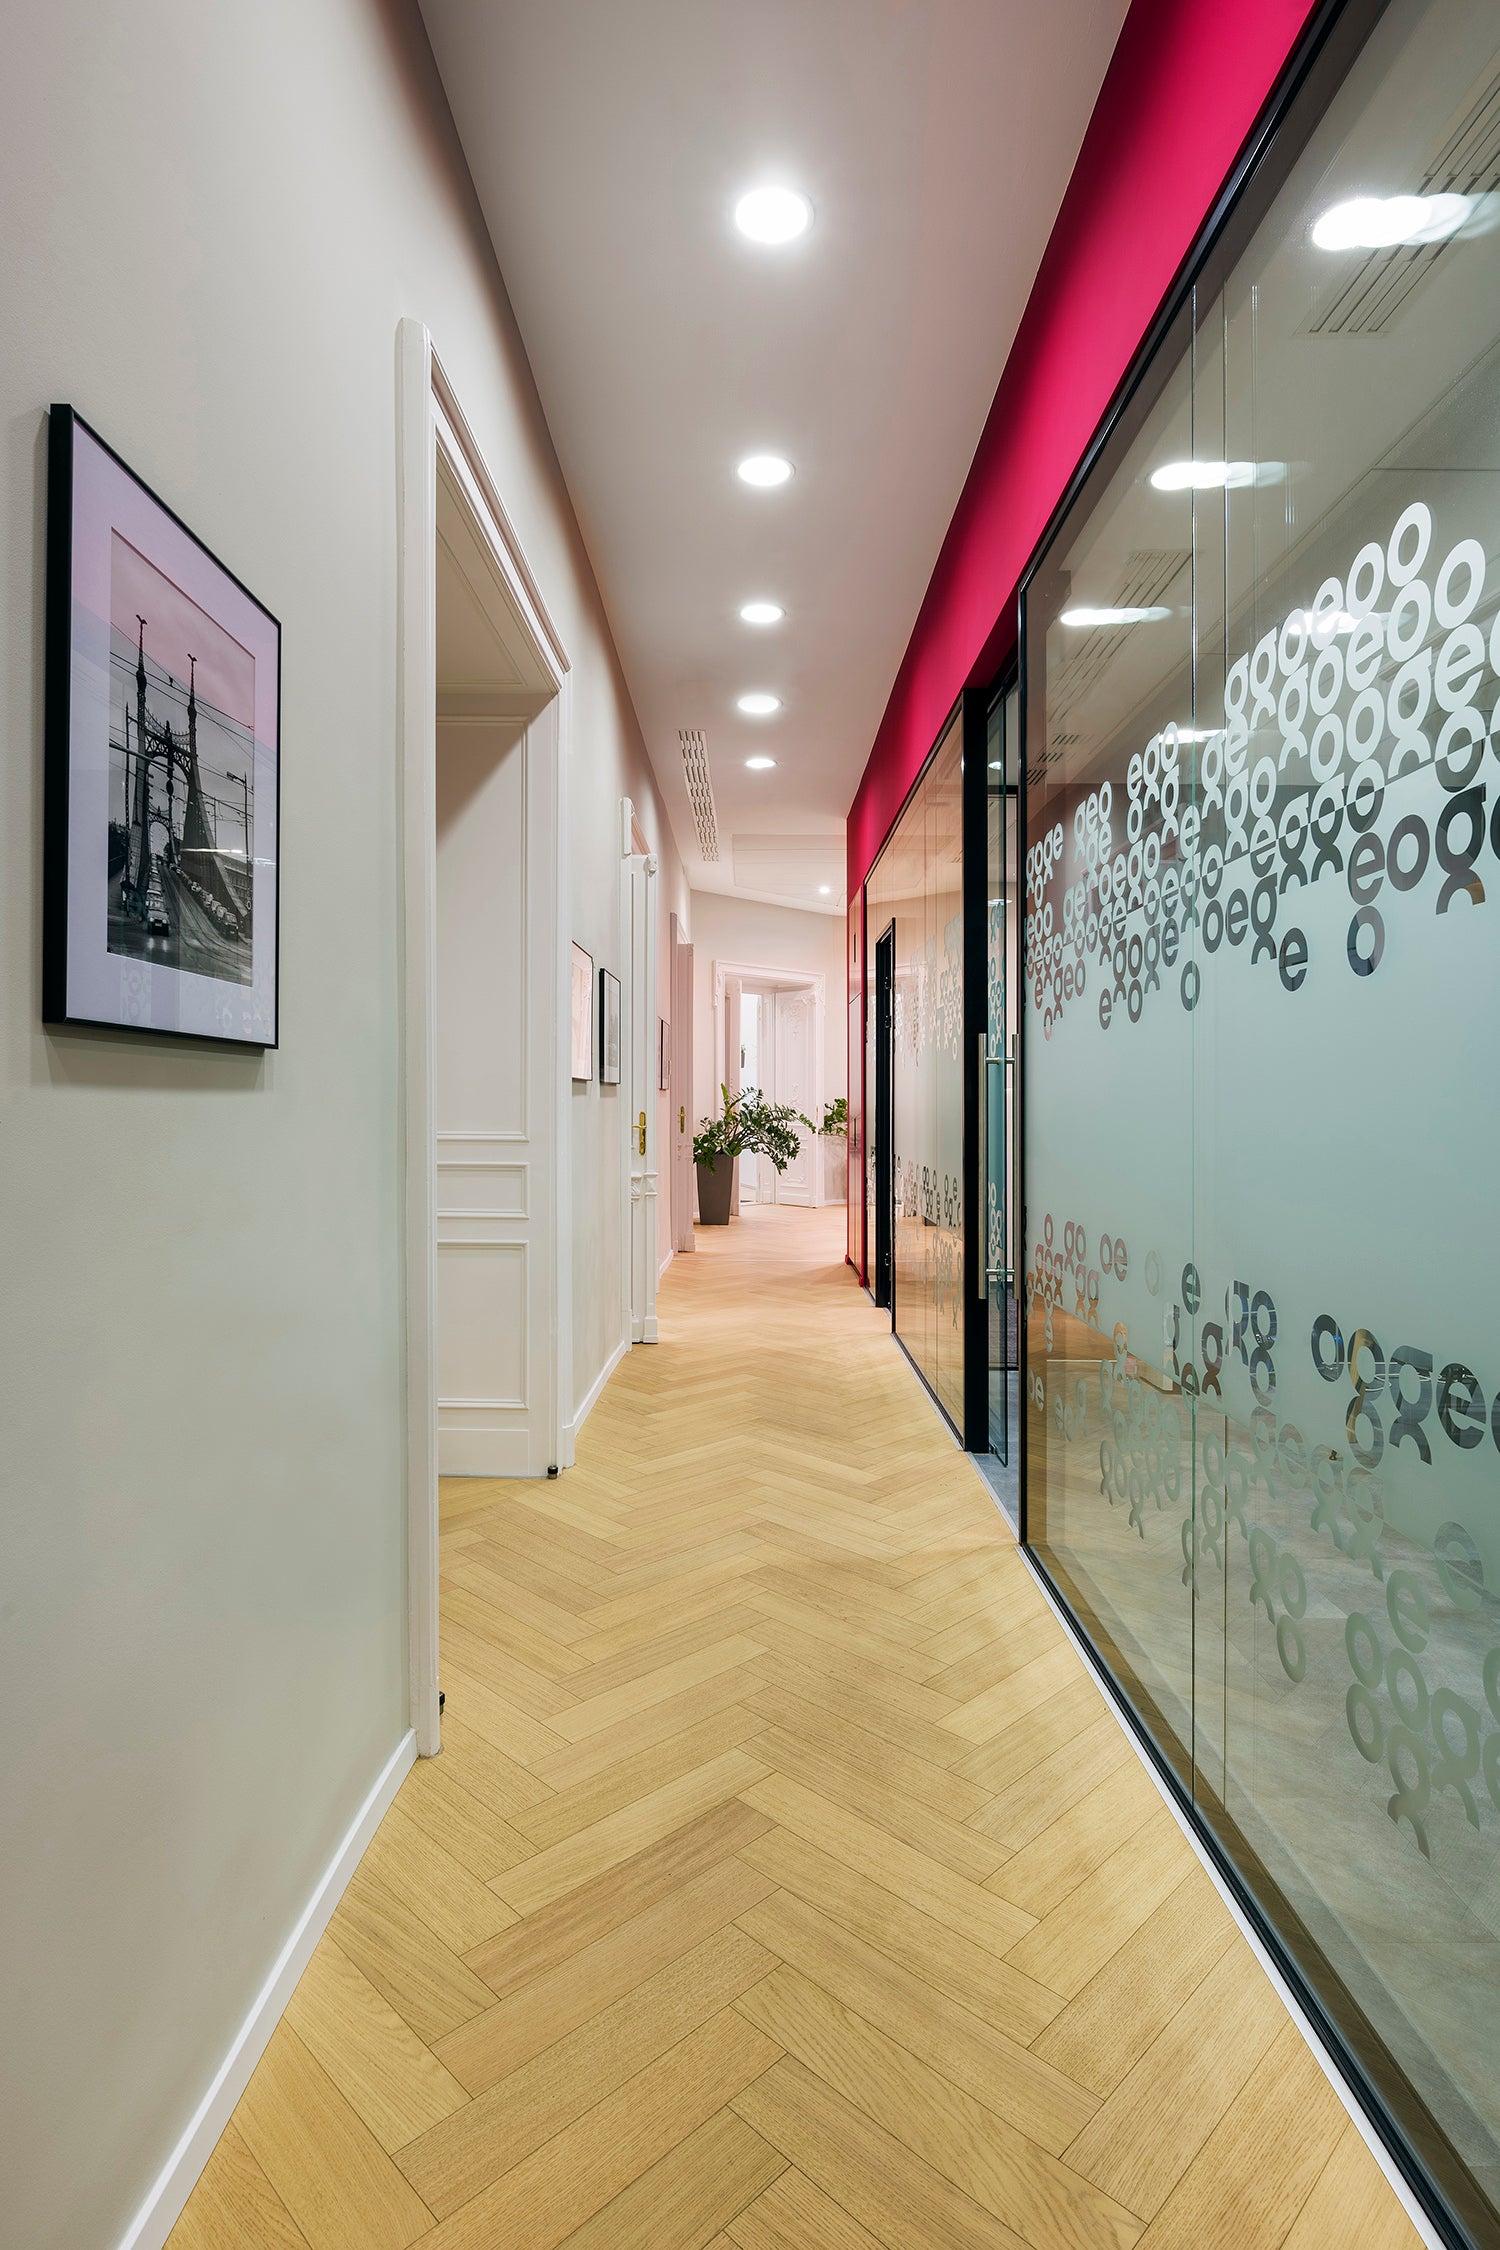 Parky- wooden office floor - wood floor - office floor - hallway floor